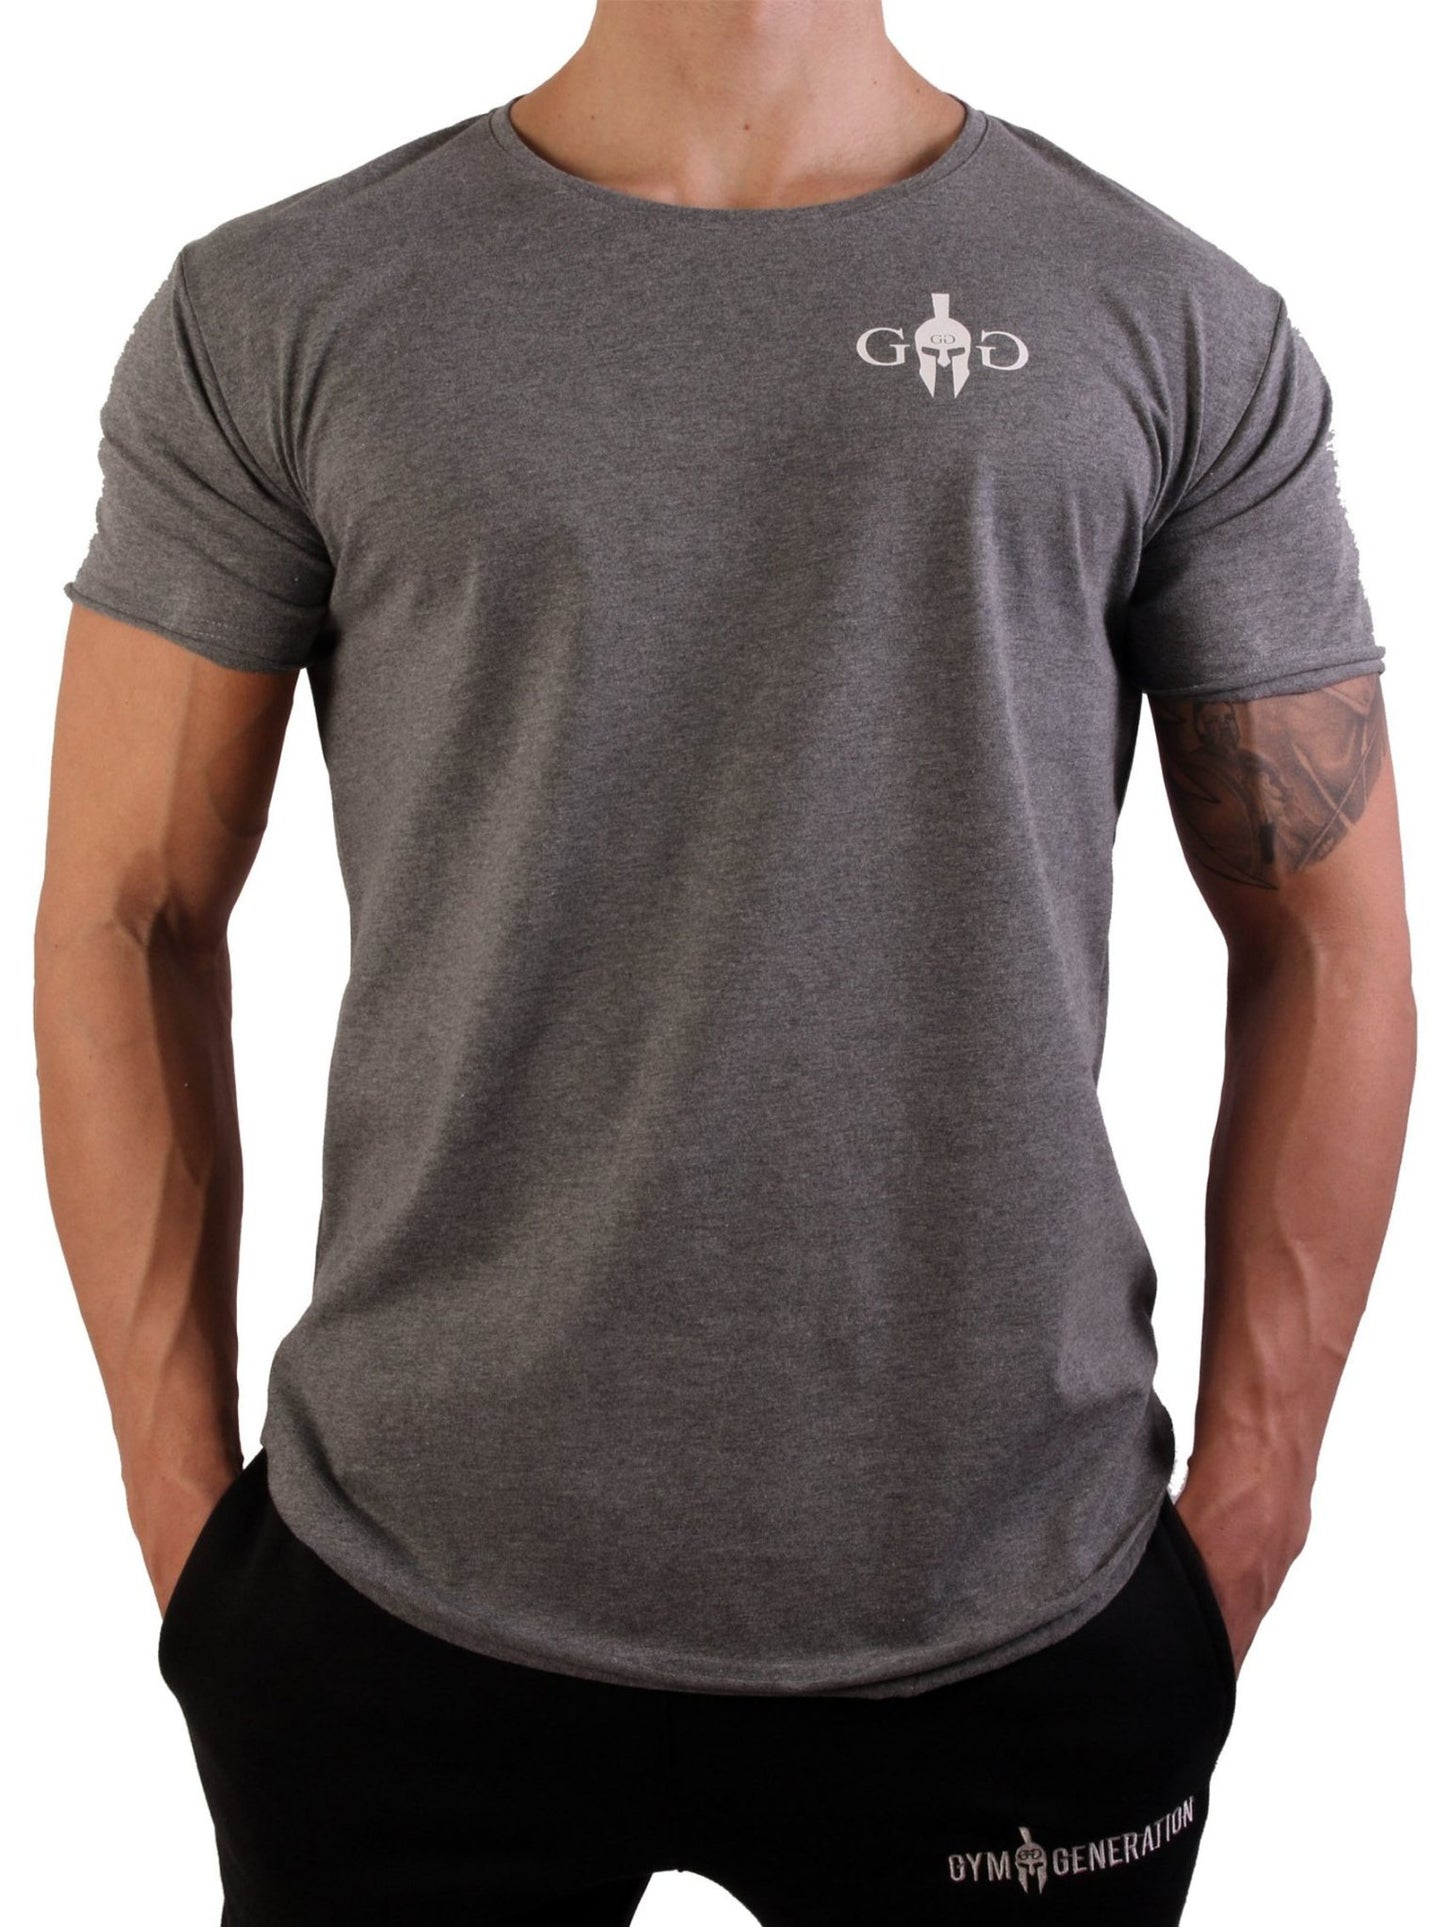 Legacy T-Shirt - Storm Grey - Gym Generation®--www.gymgeneration.ch